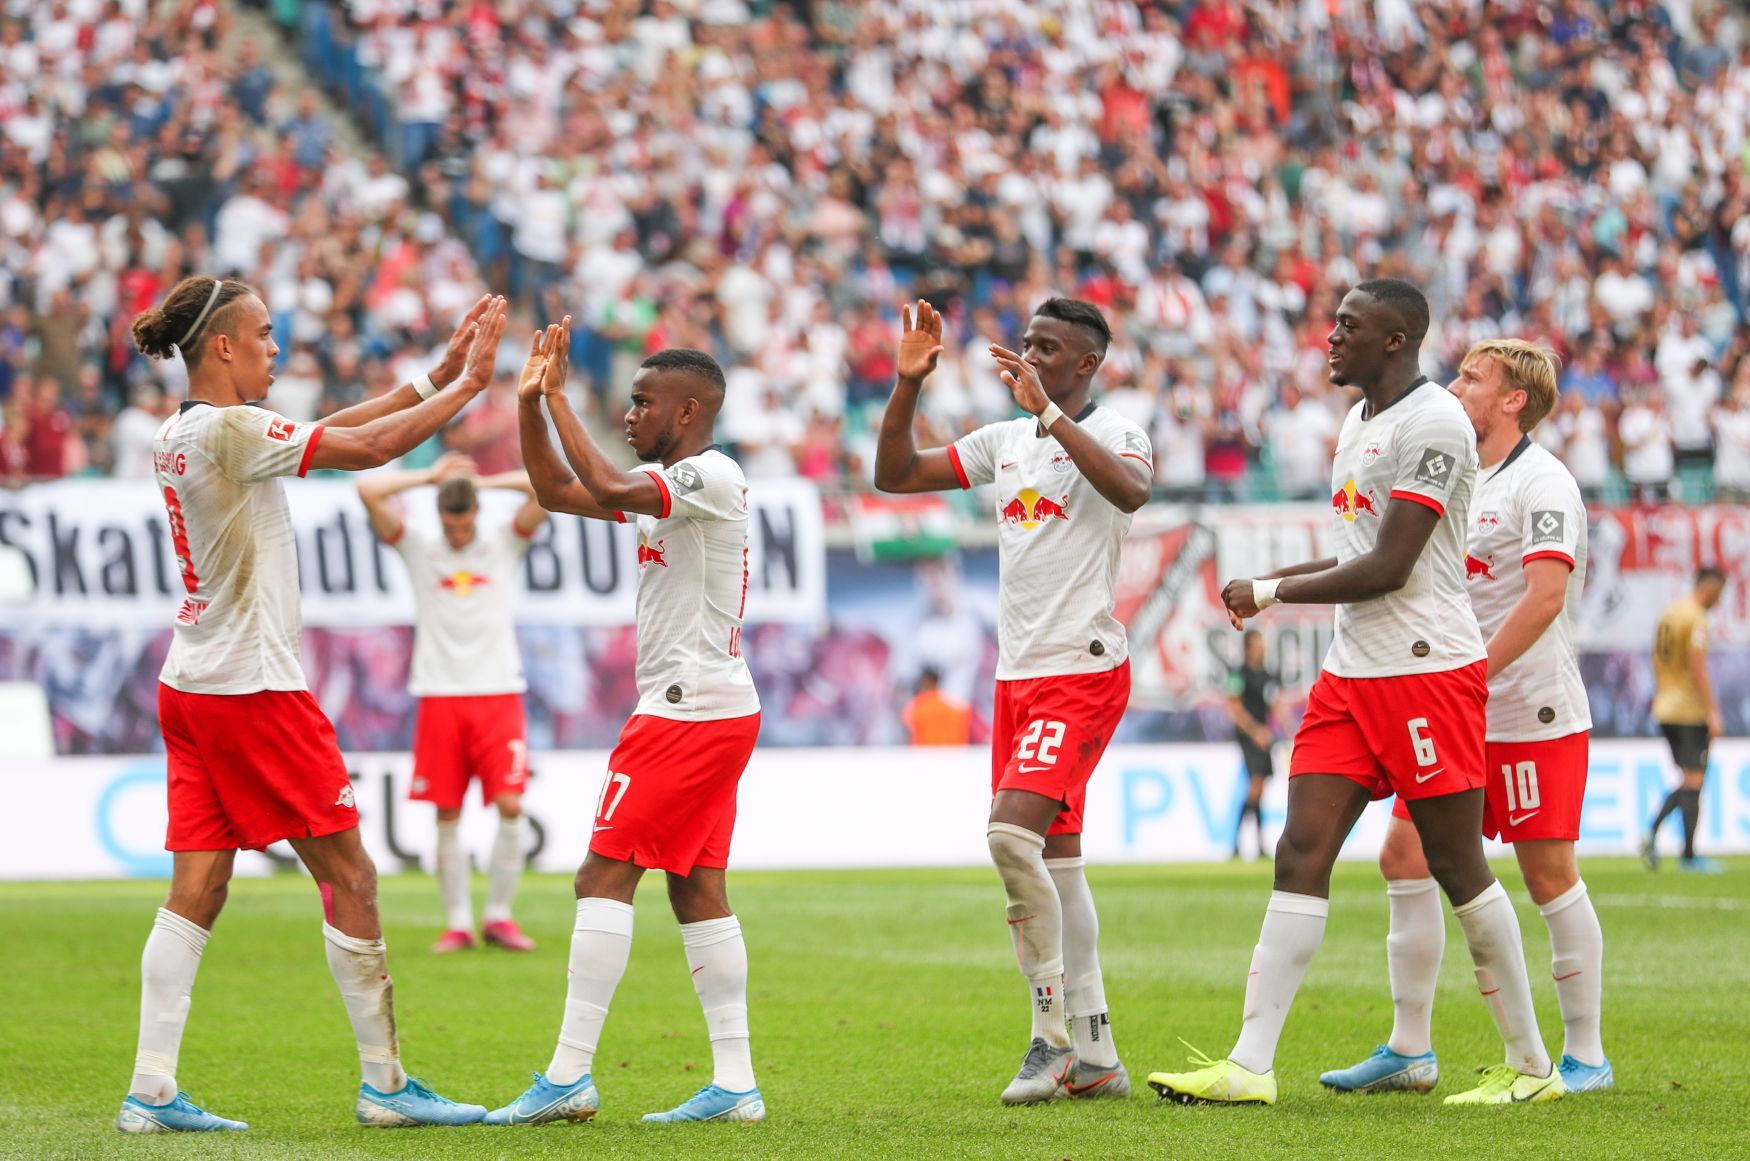 2. kolo německé bundesligy 2019/20, Lipsko - Frankfurt: Fotbalisté Lipska oslavují gól na 2:0.